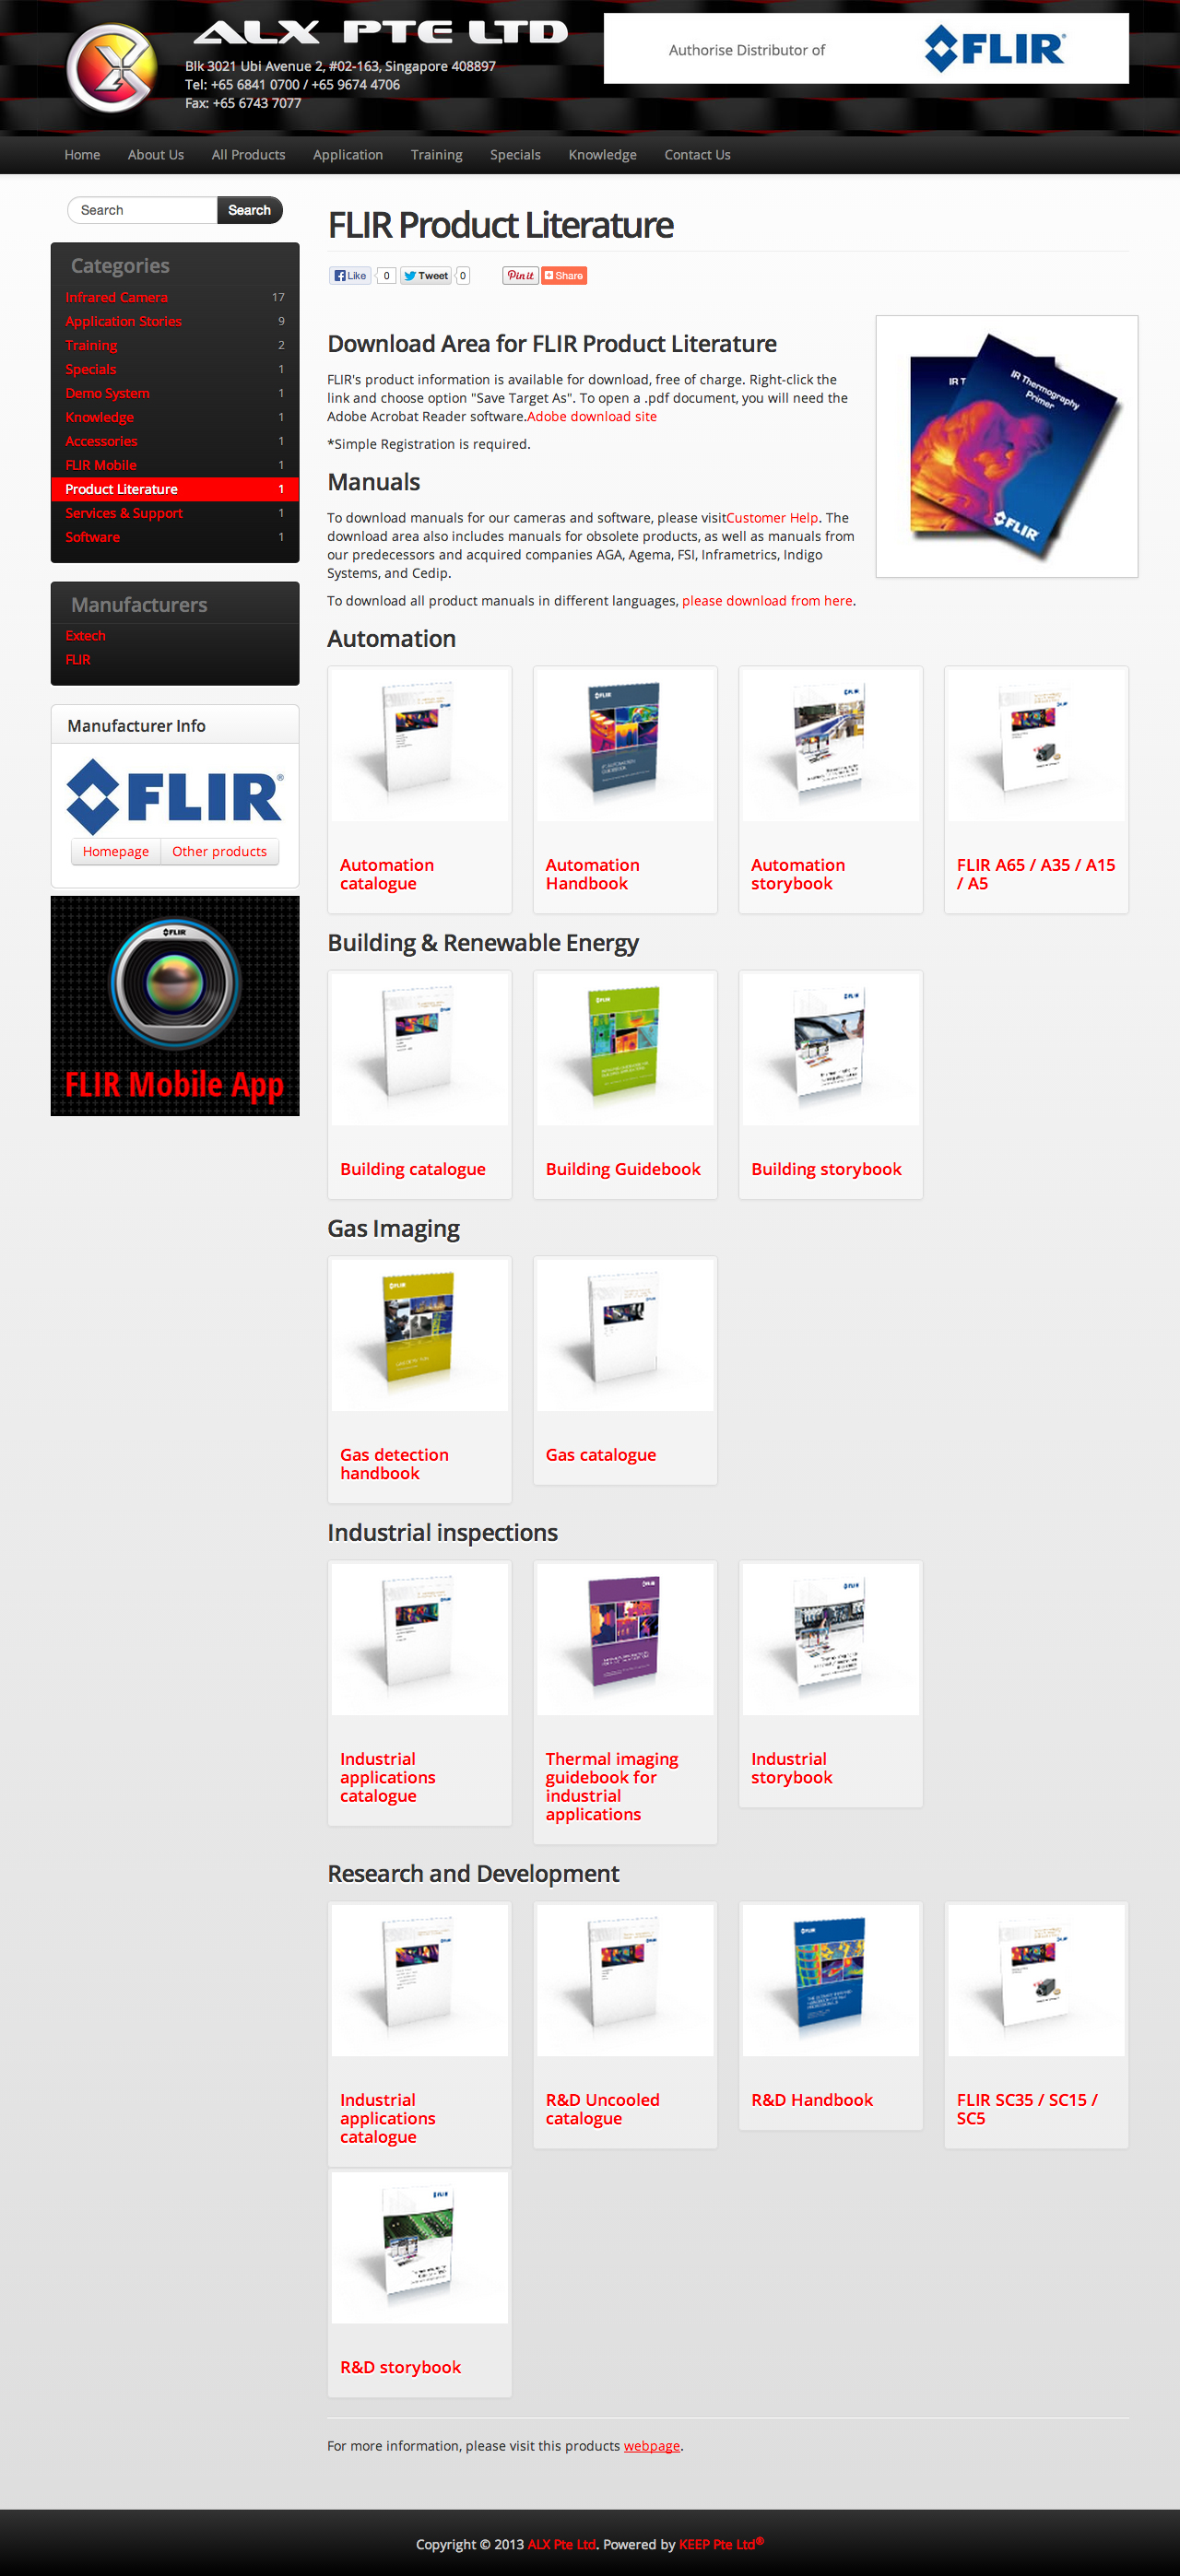 ALX Pte Ltd website product details page